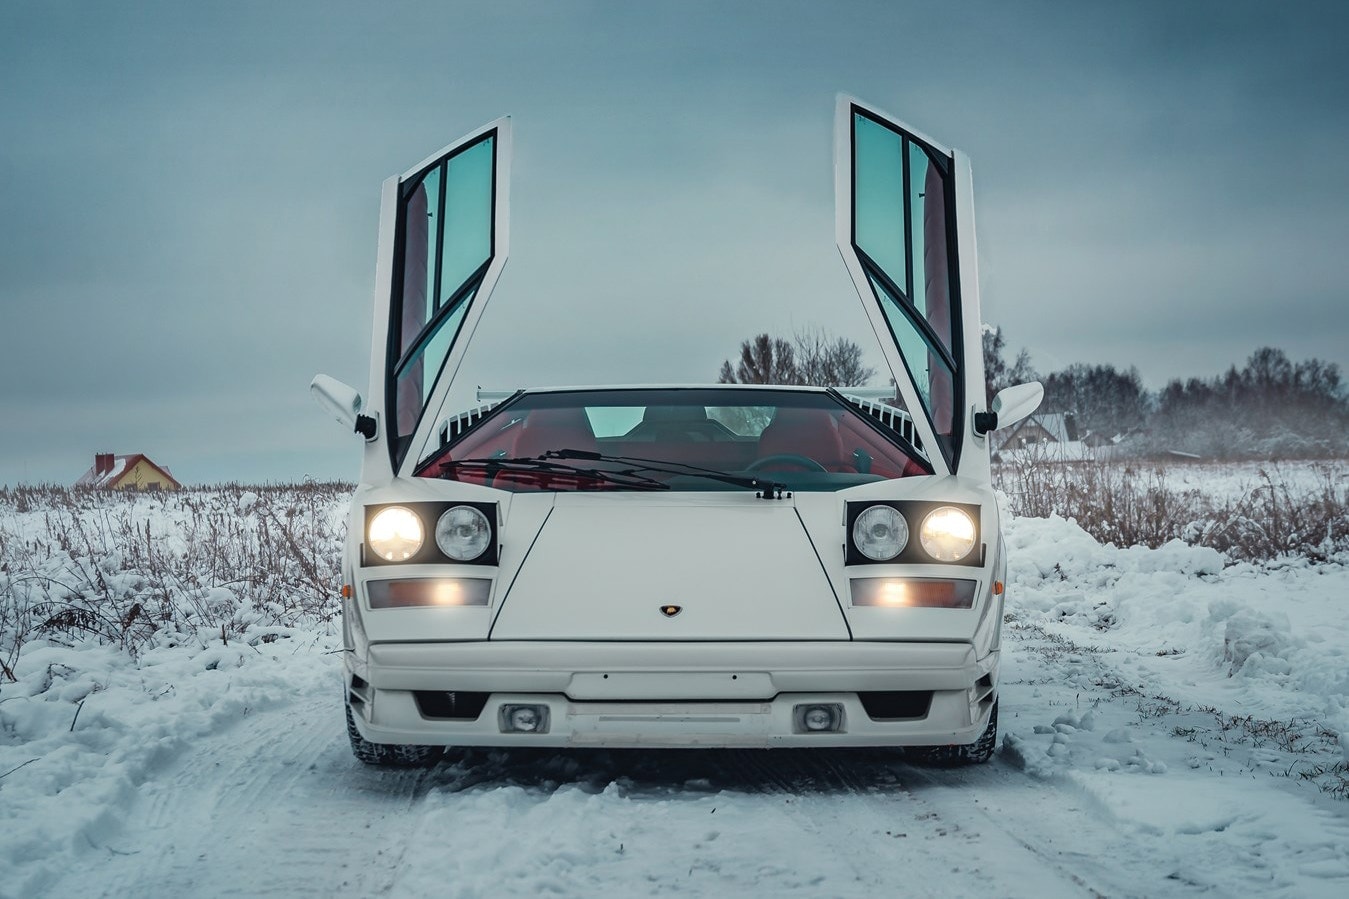 25 周年纪念版 Lamborghini Countach 现身拍卖行